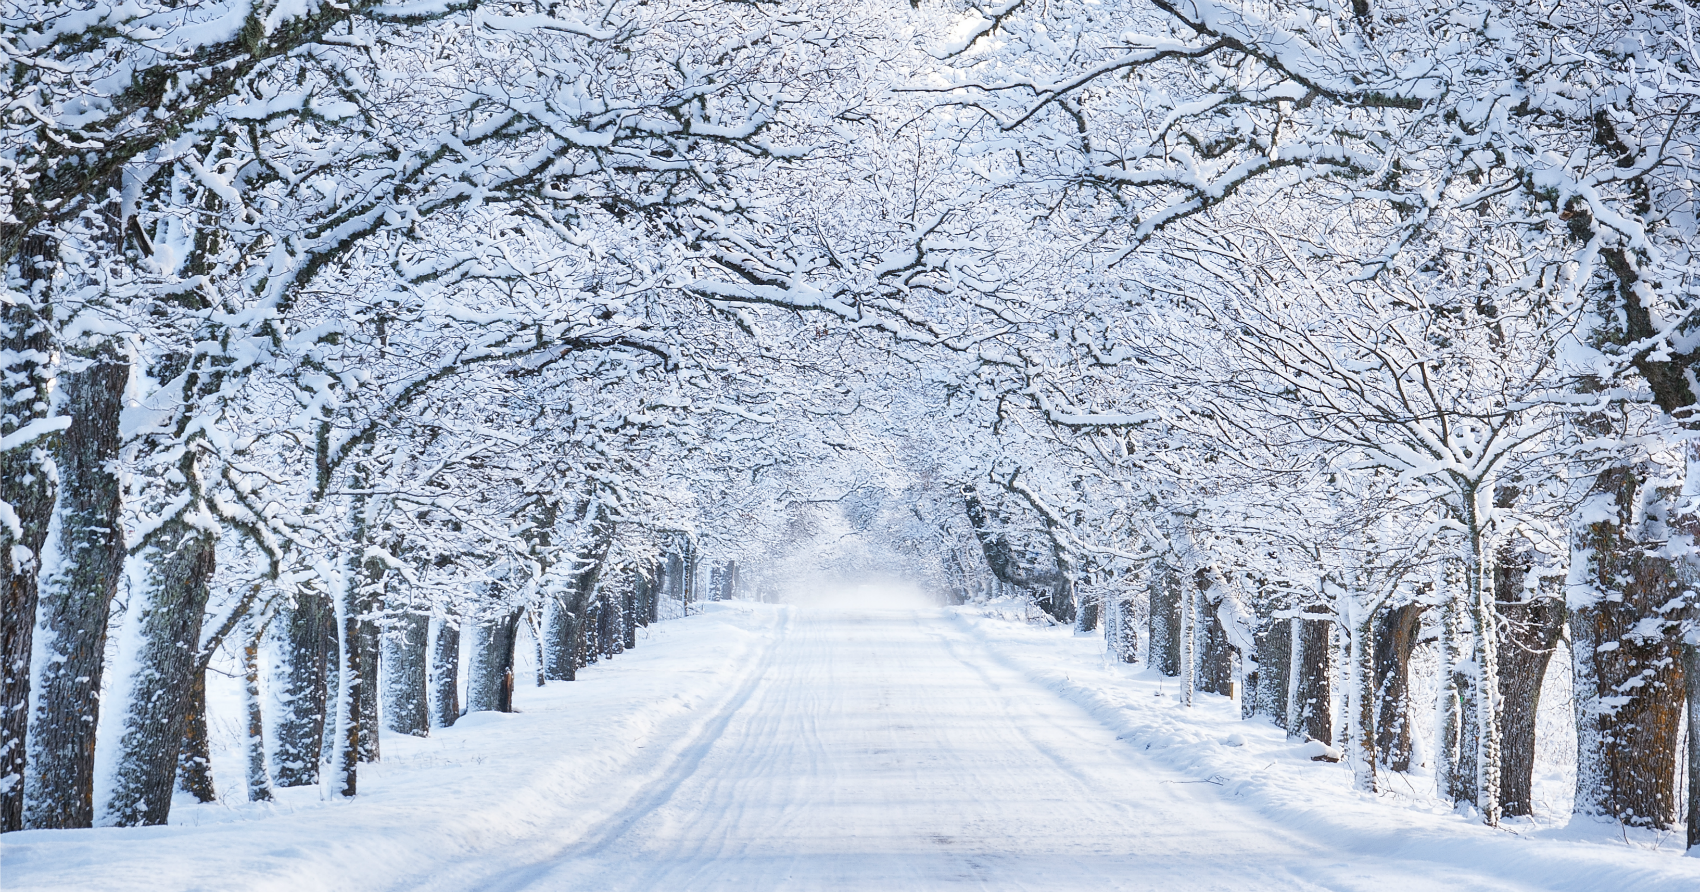 Cả đường và cây đều ngập tuyết vào mùa đông